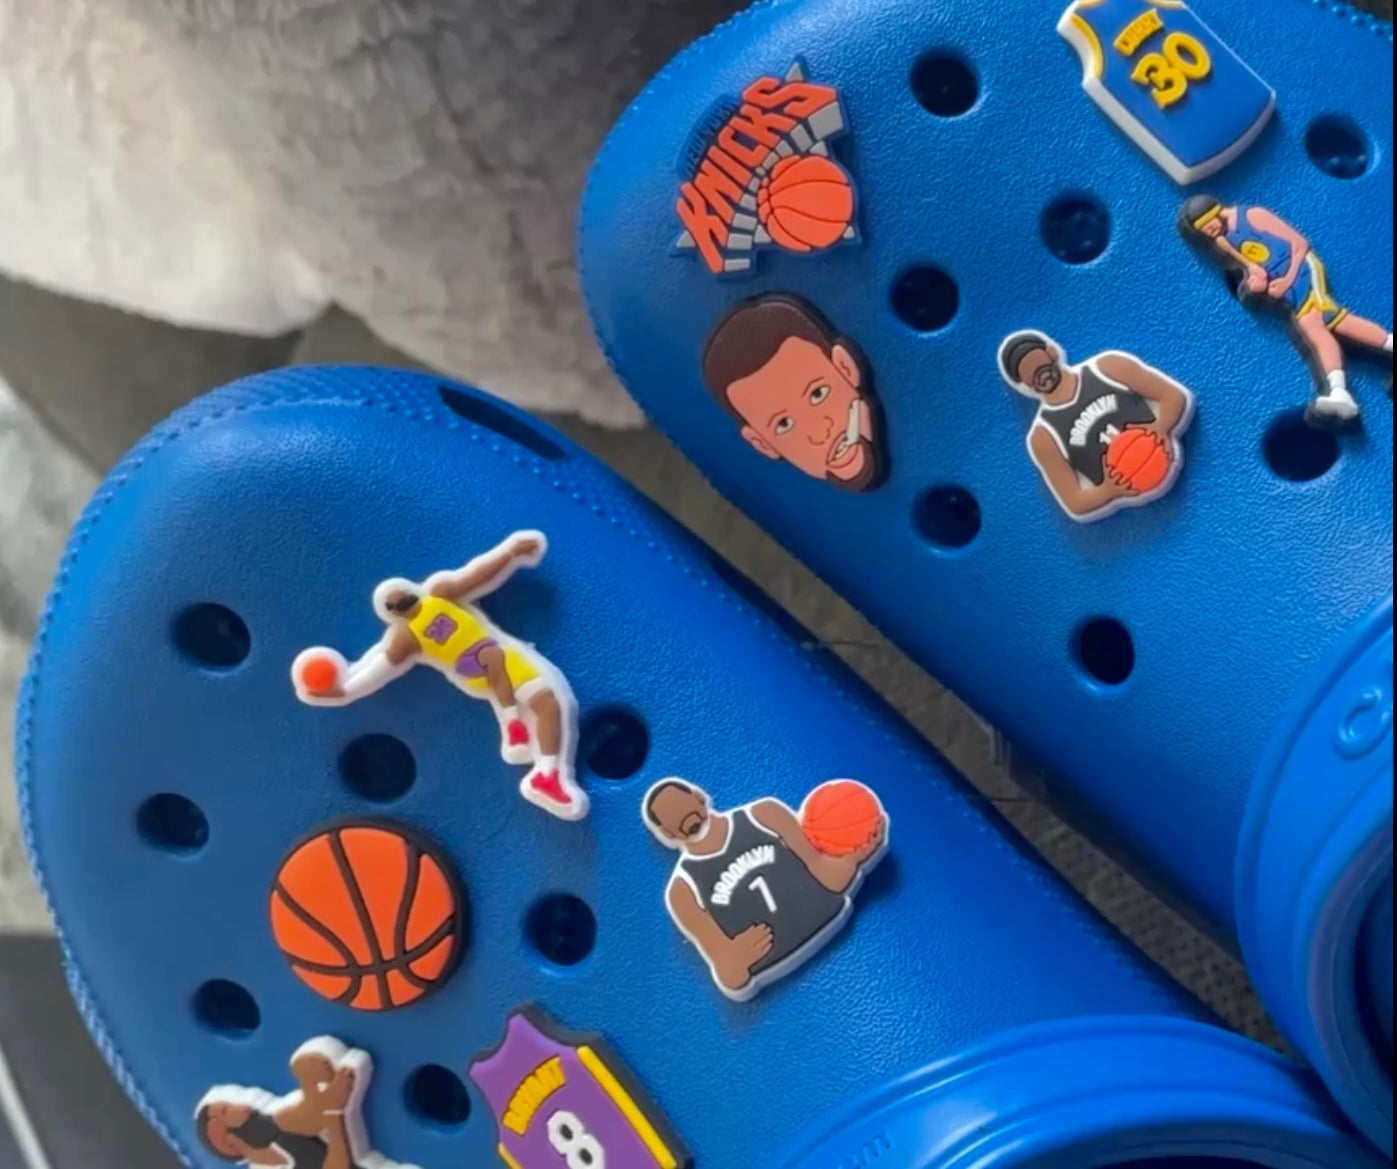 NBA Croc Charms